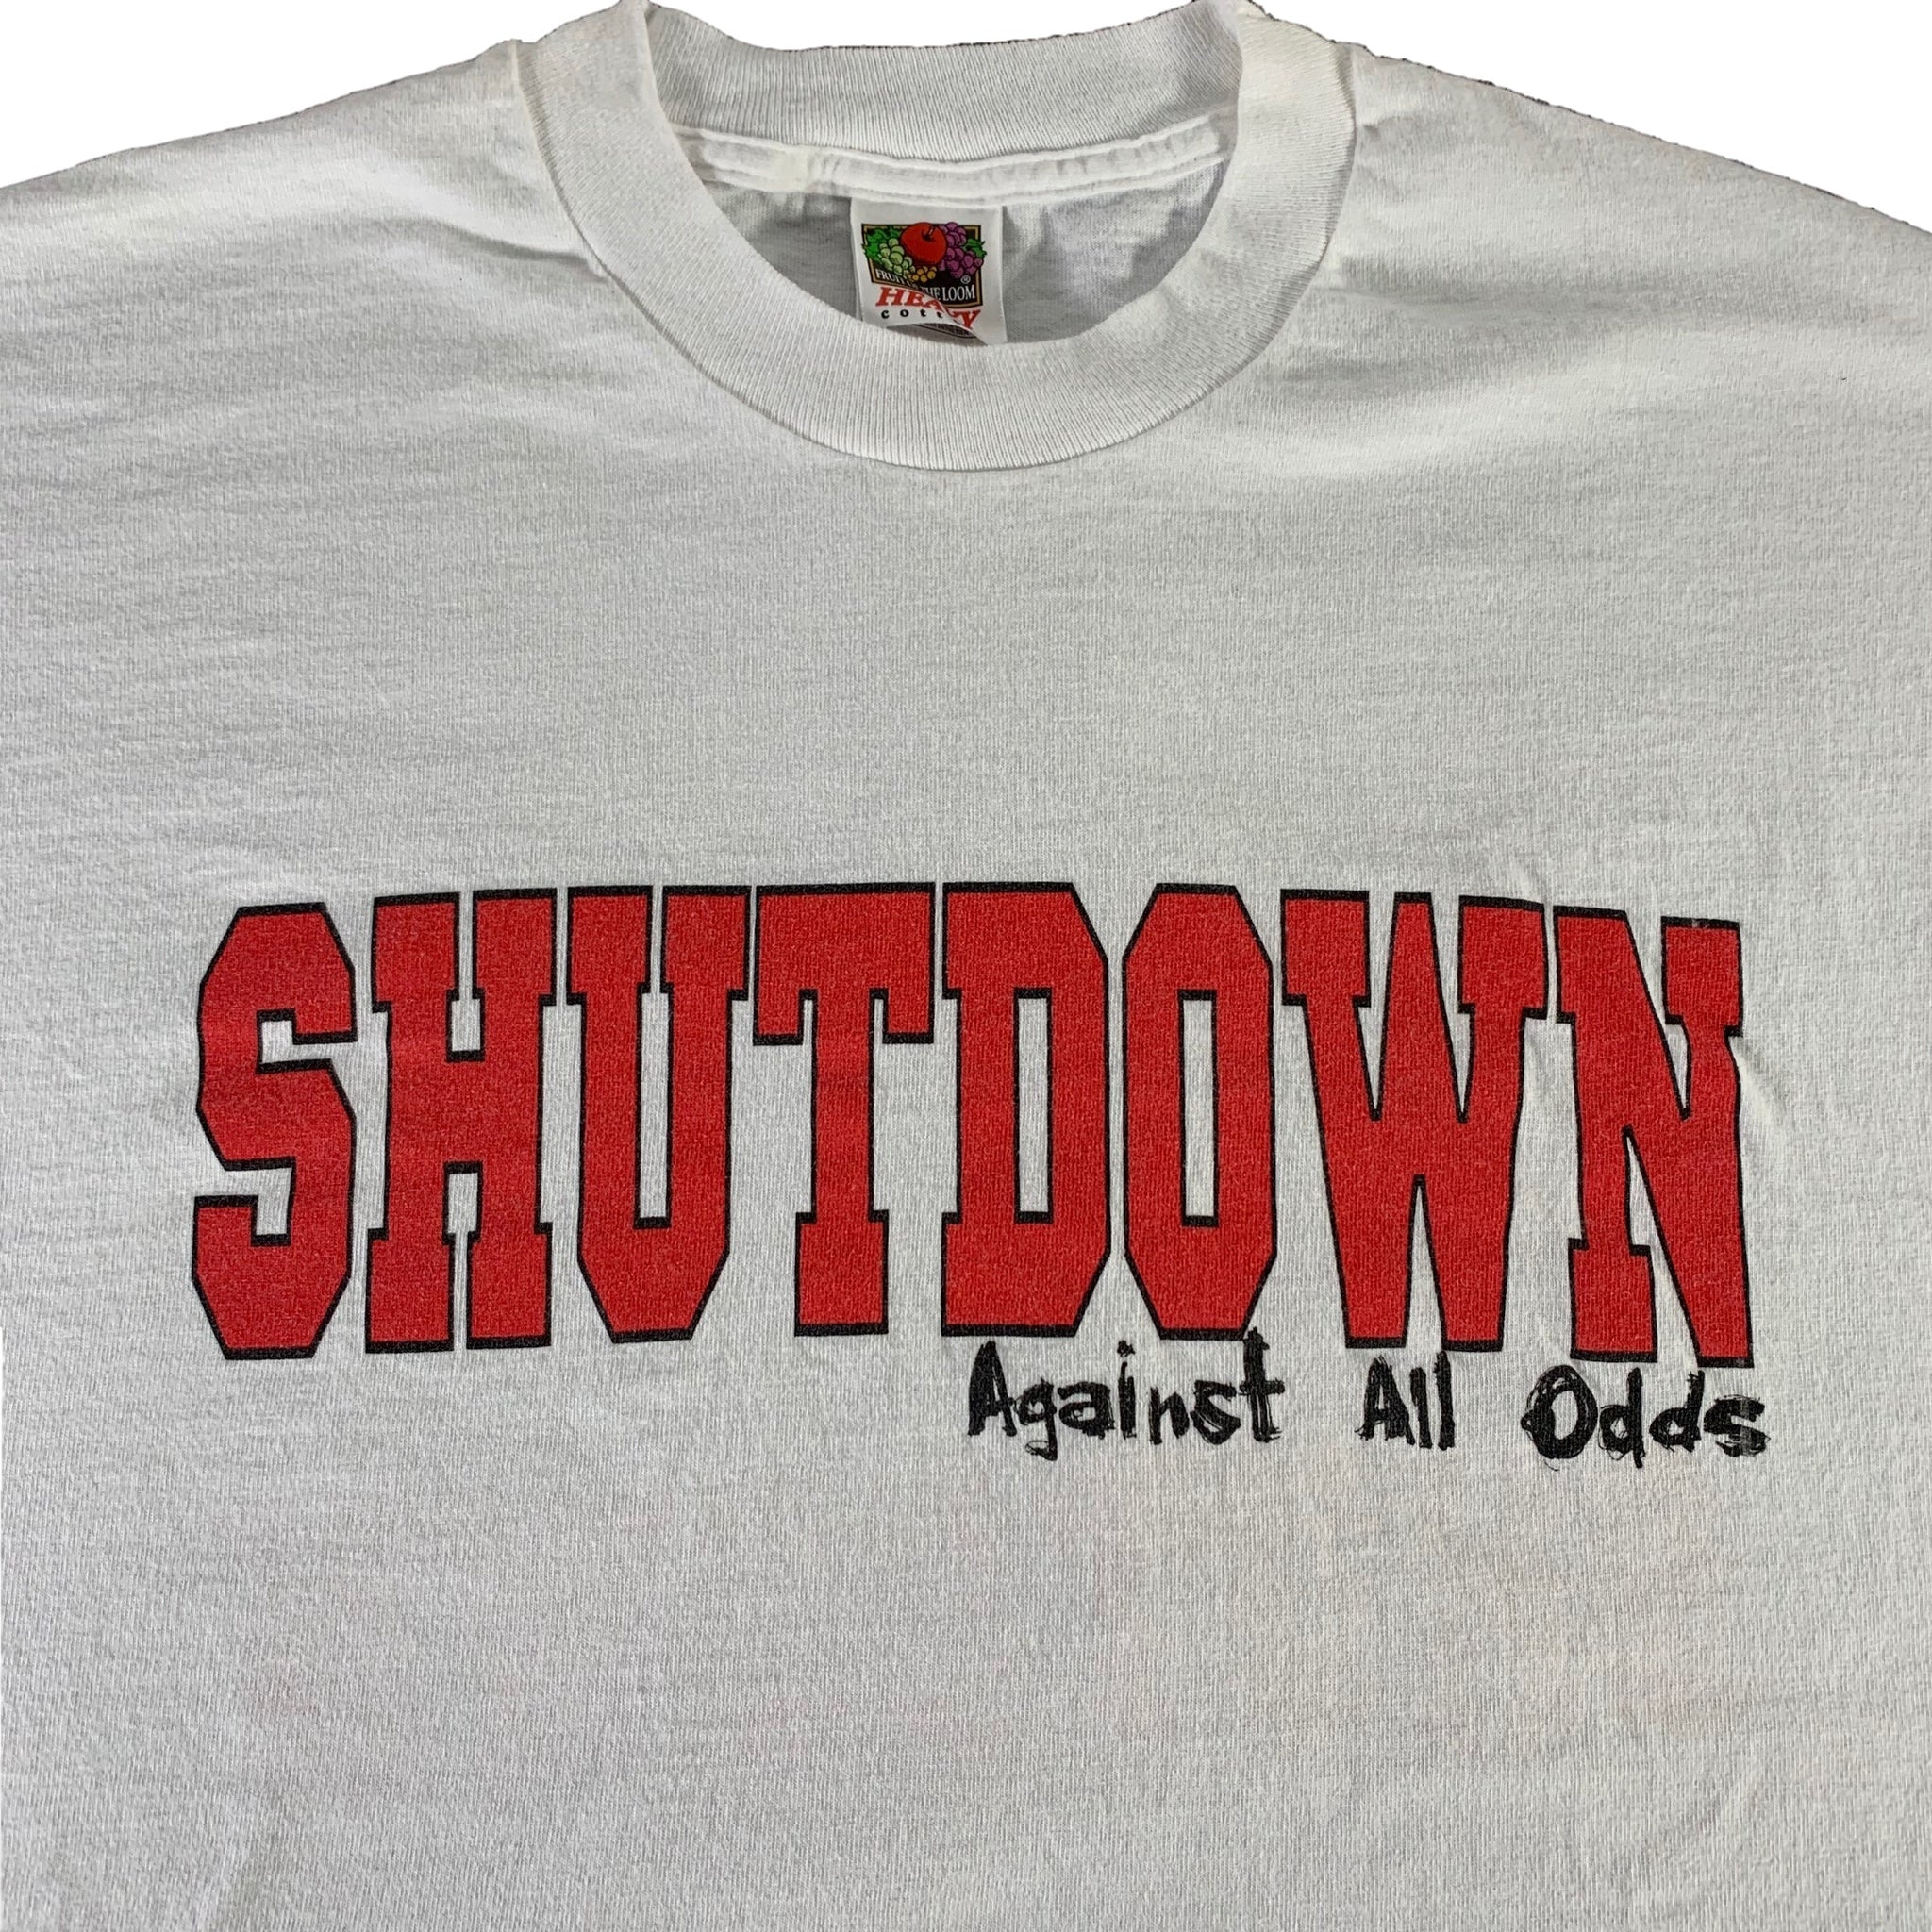 Against All Odds, Shutdown